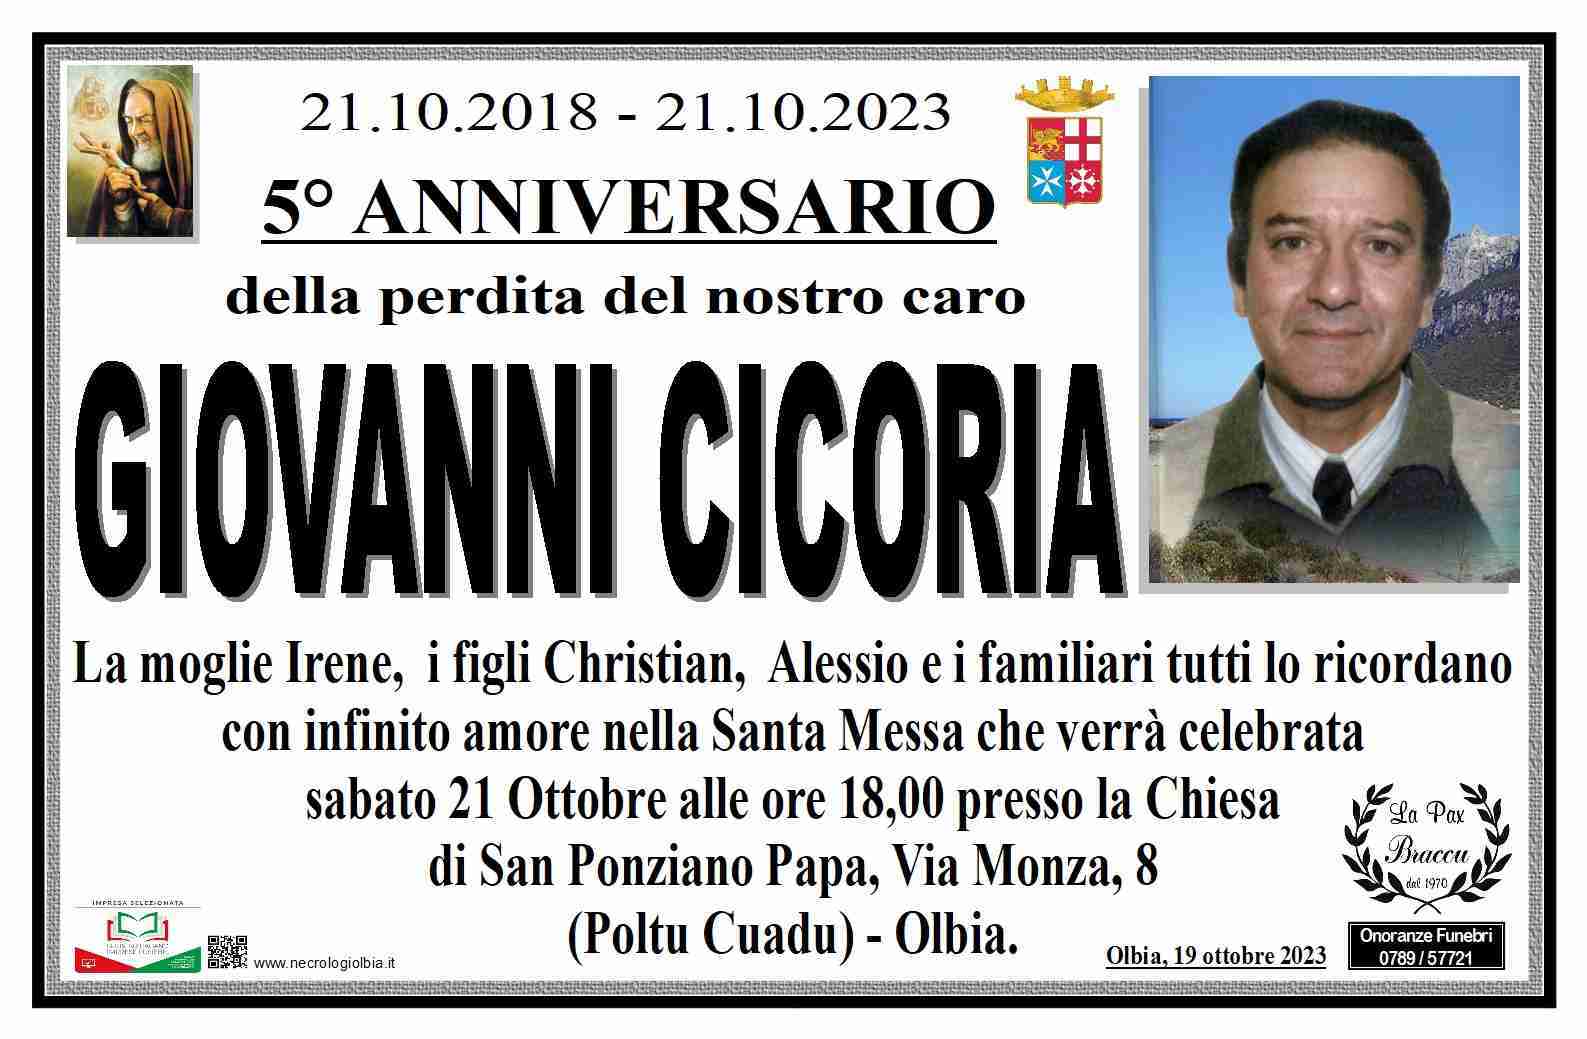 Giovanni Cicoria